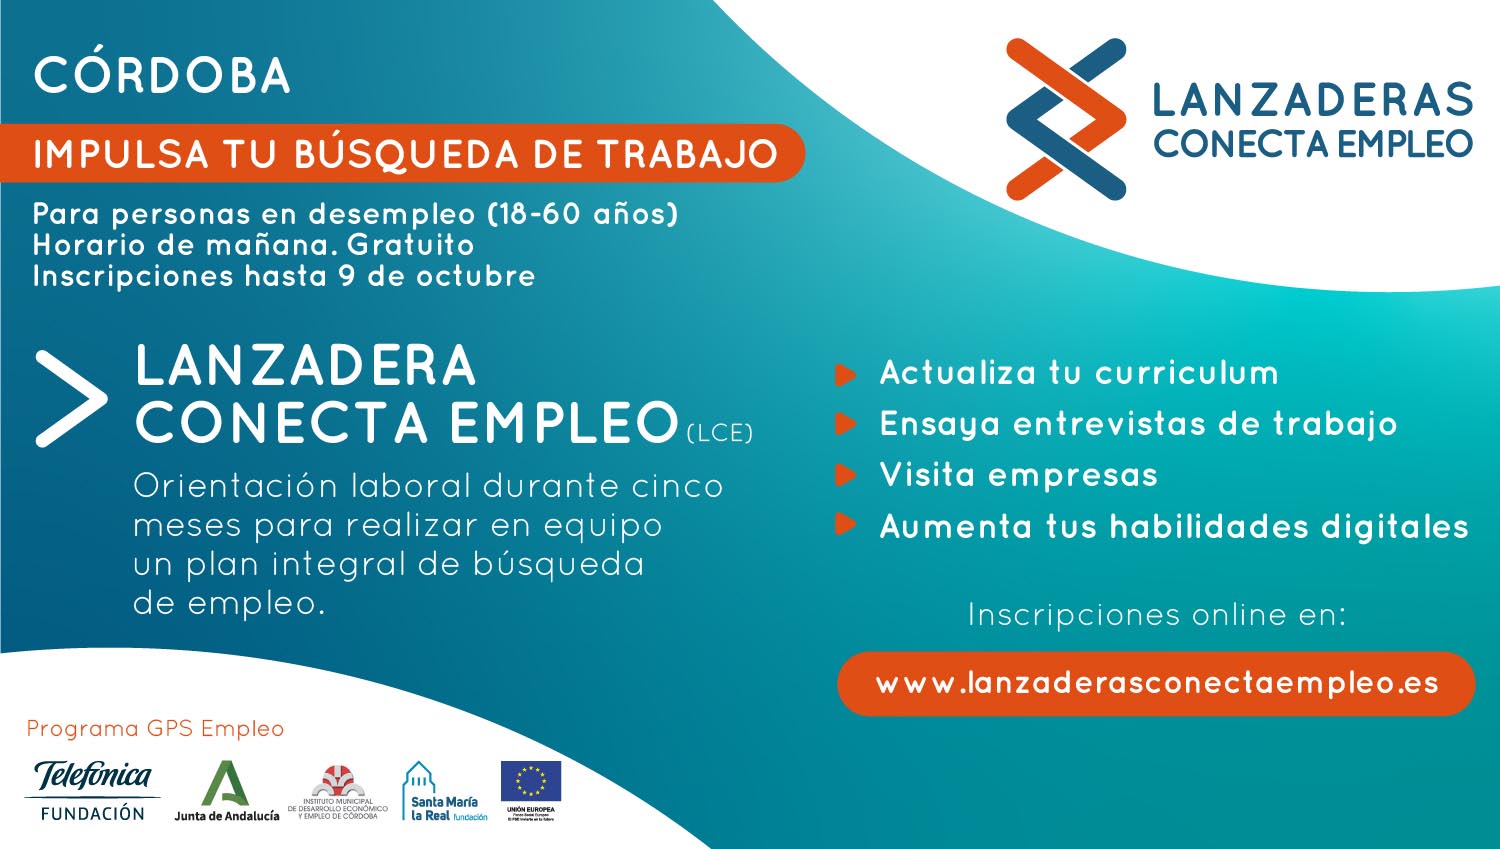 Córdoba contará a partir de octubre con una nueva Lanzadera Conecta Empleo